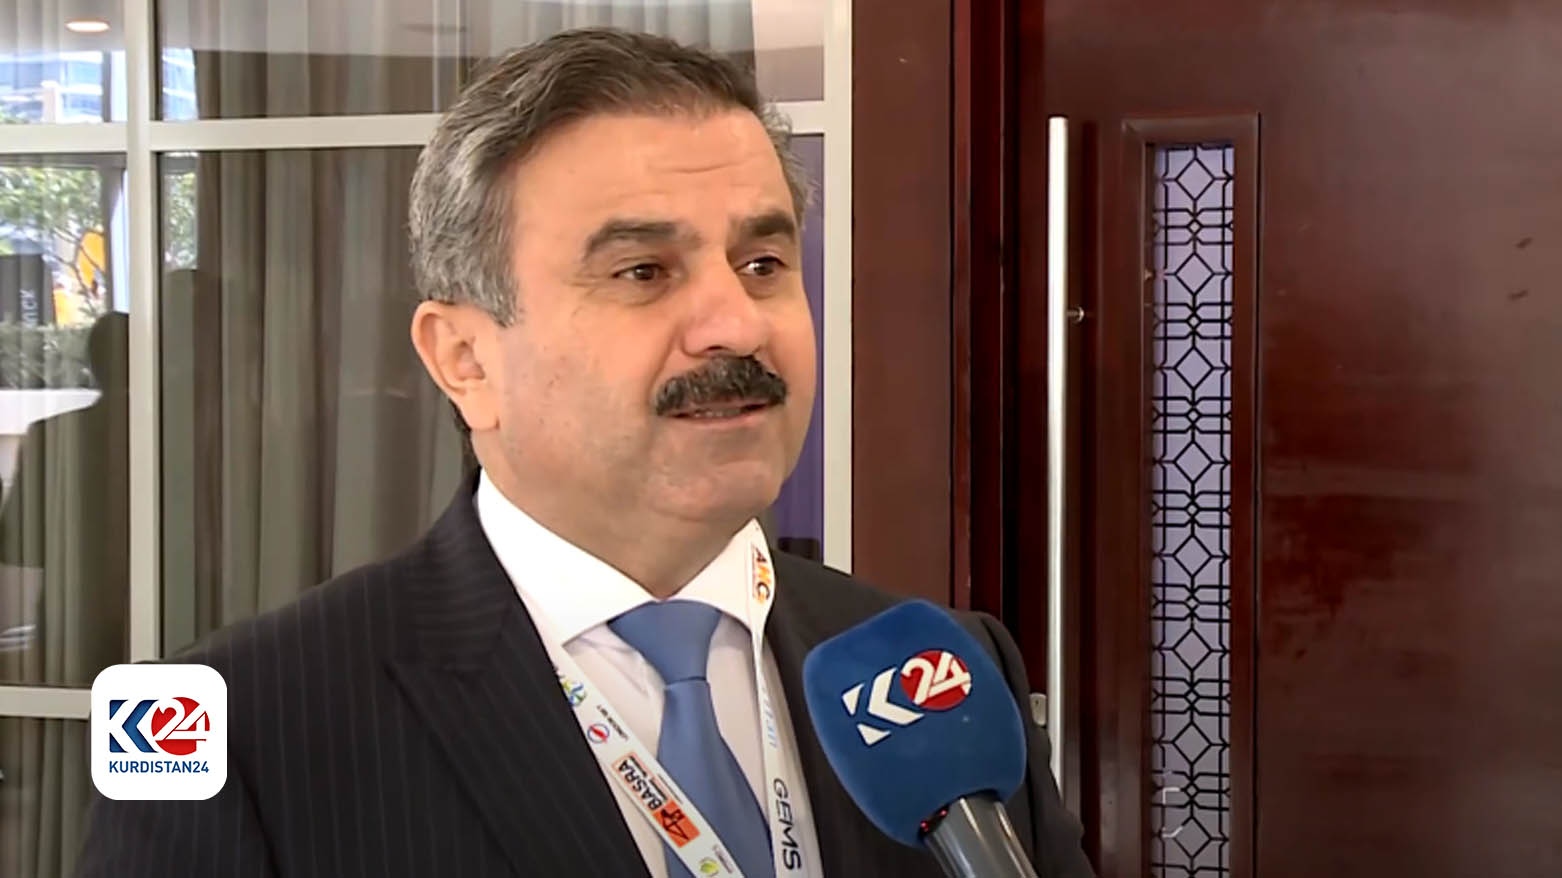 Mohammed Shukri, the Chairman of the Kurdistan Board of Investment, speaking to Kurdistan 24. (Photo: Kurdistan 24)